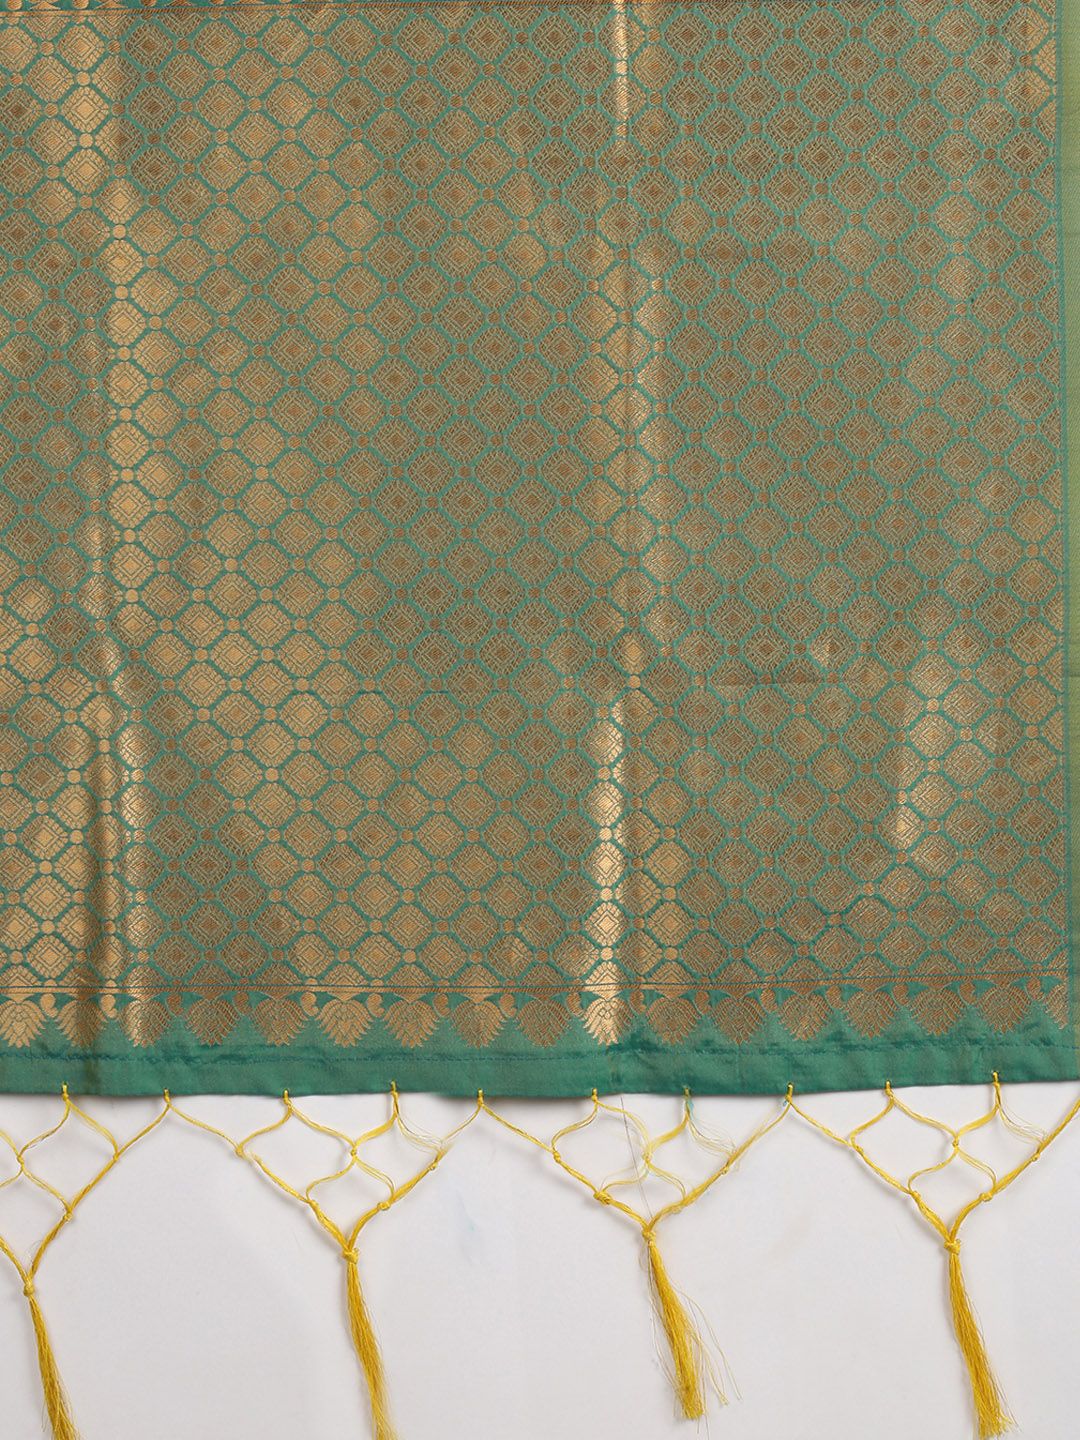 Lemon Yellow Banarasi silk sarees for weddings